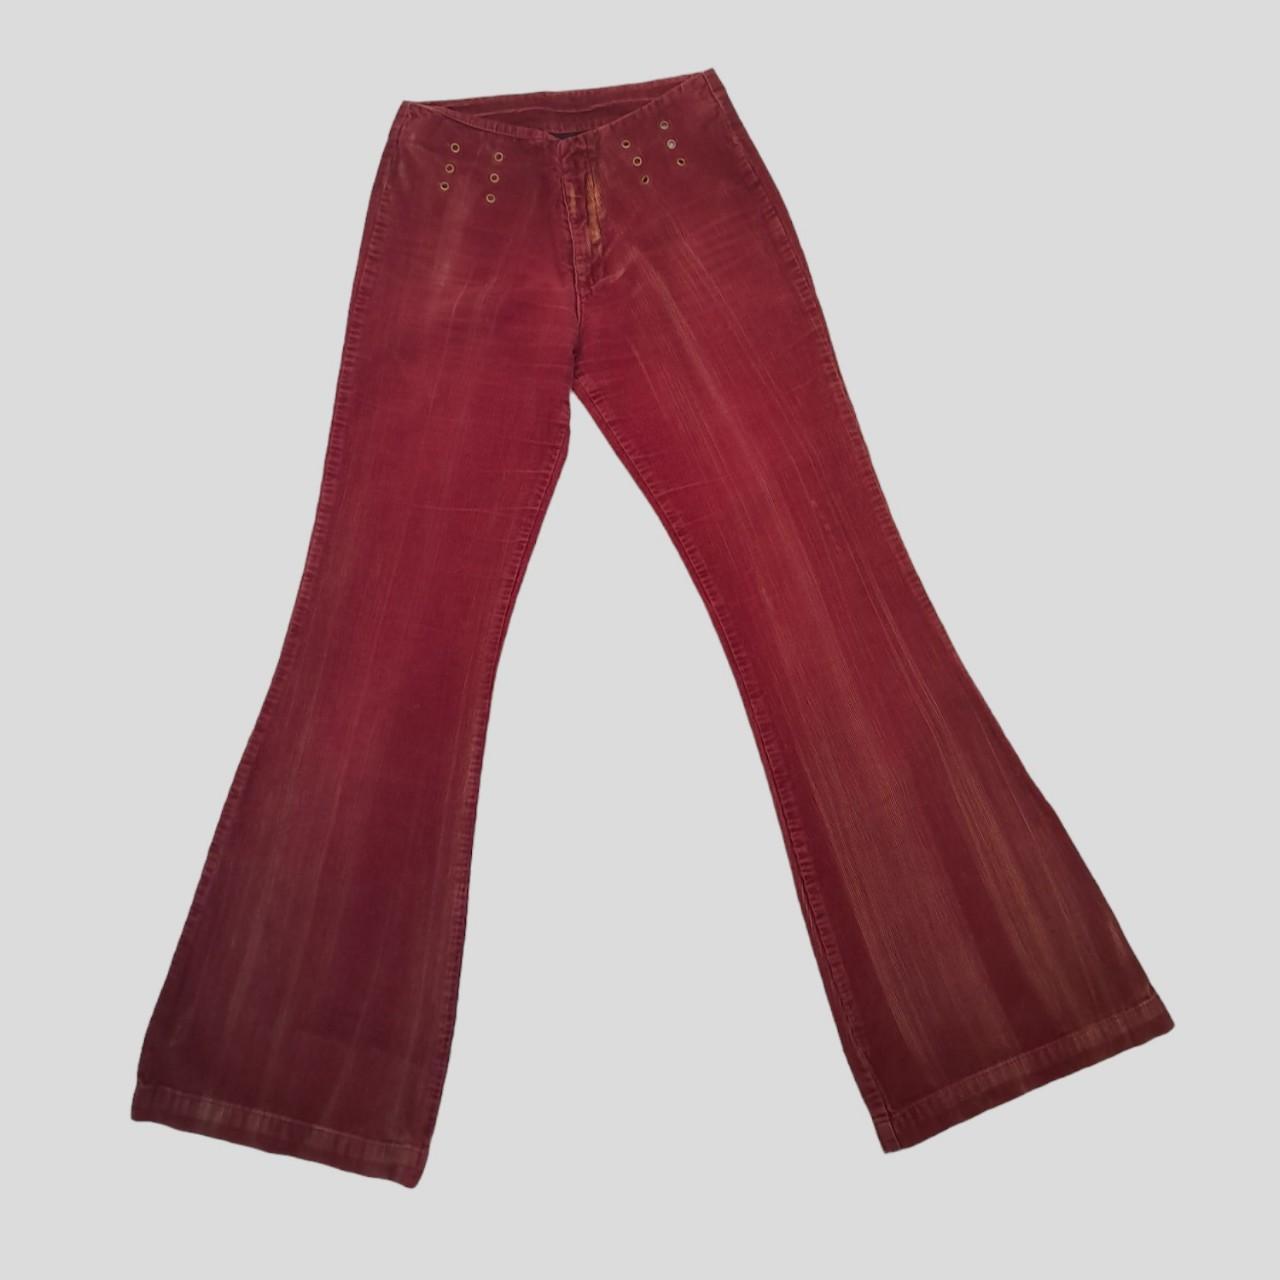 ️MOTOR ️Vintage red flared corduroy pants For S/M... - Depop